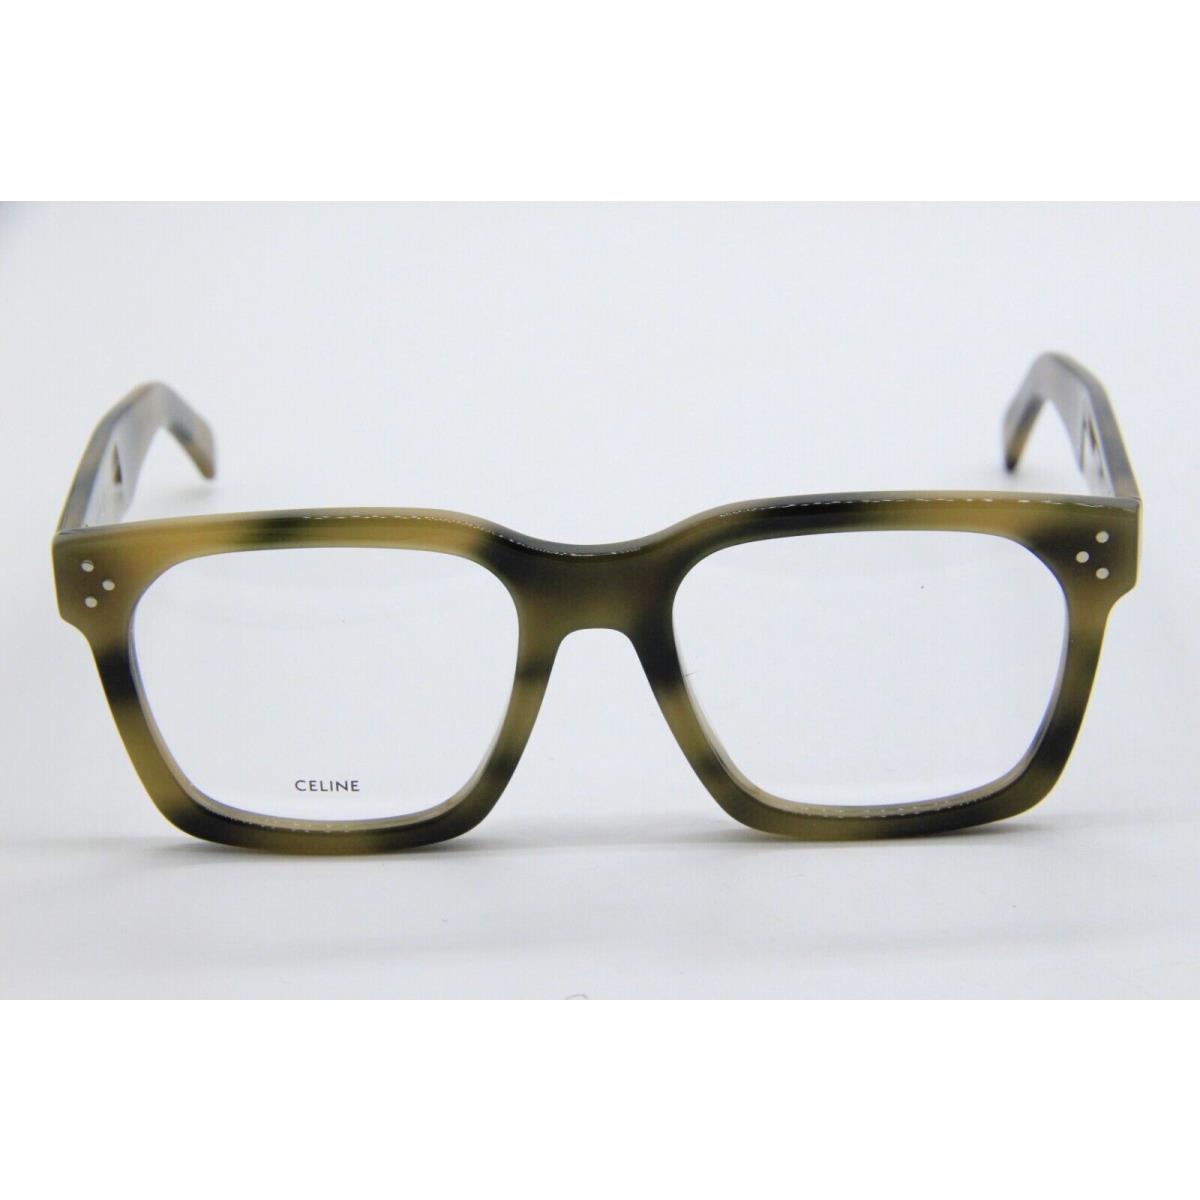 Celine eyeglasses  - GREEN BLACK Frame